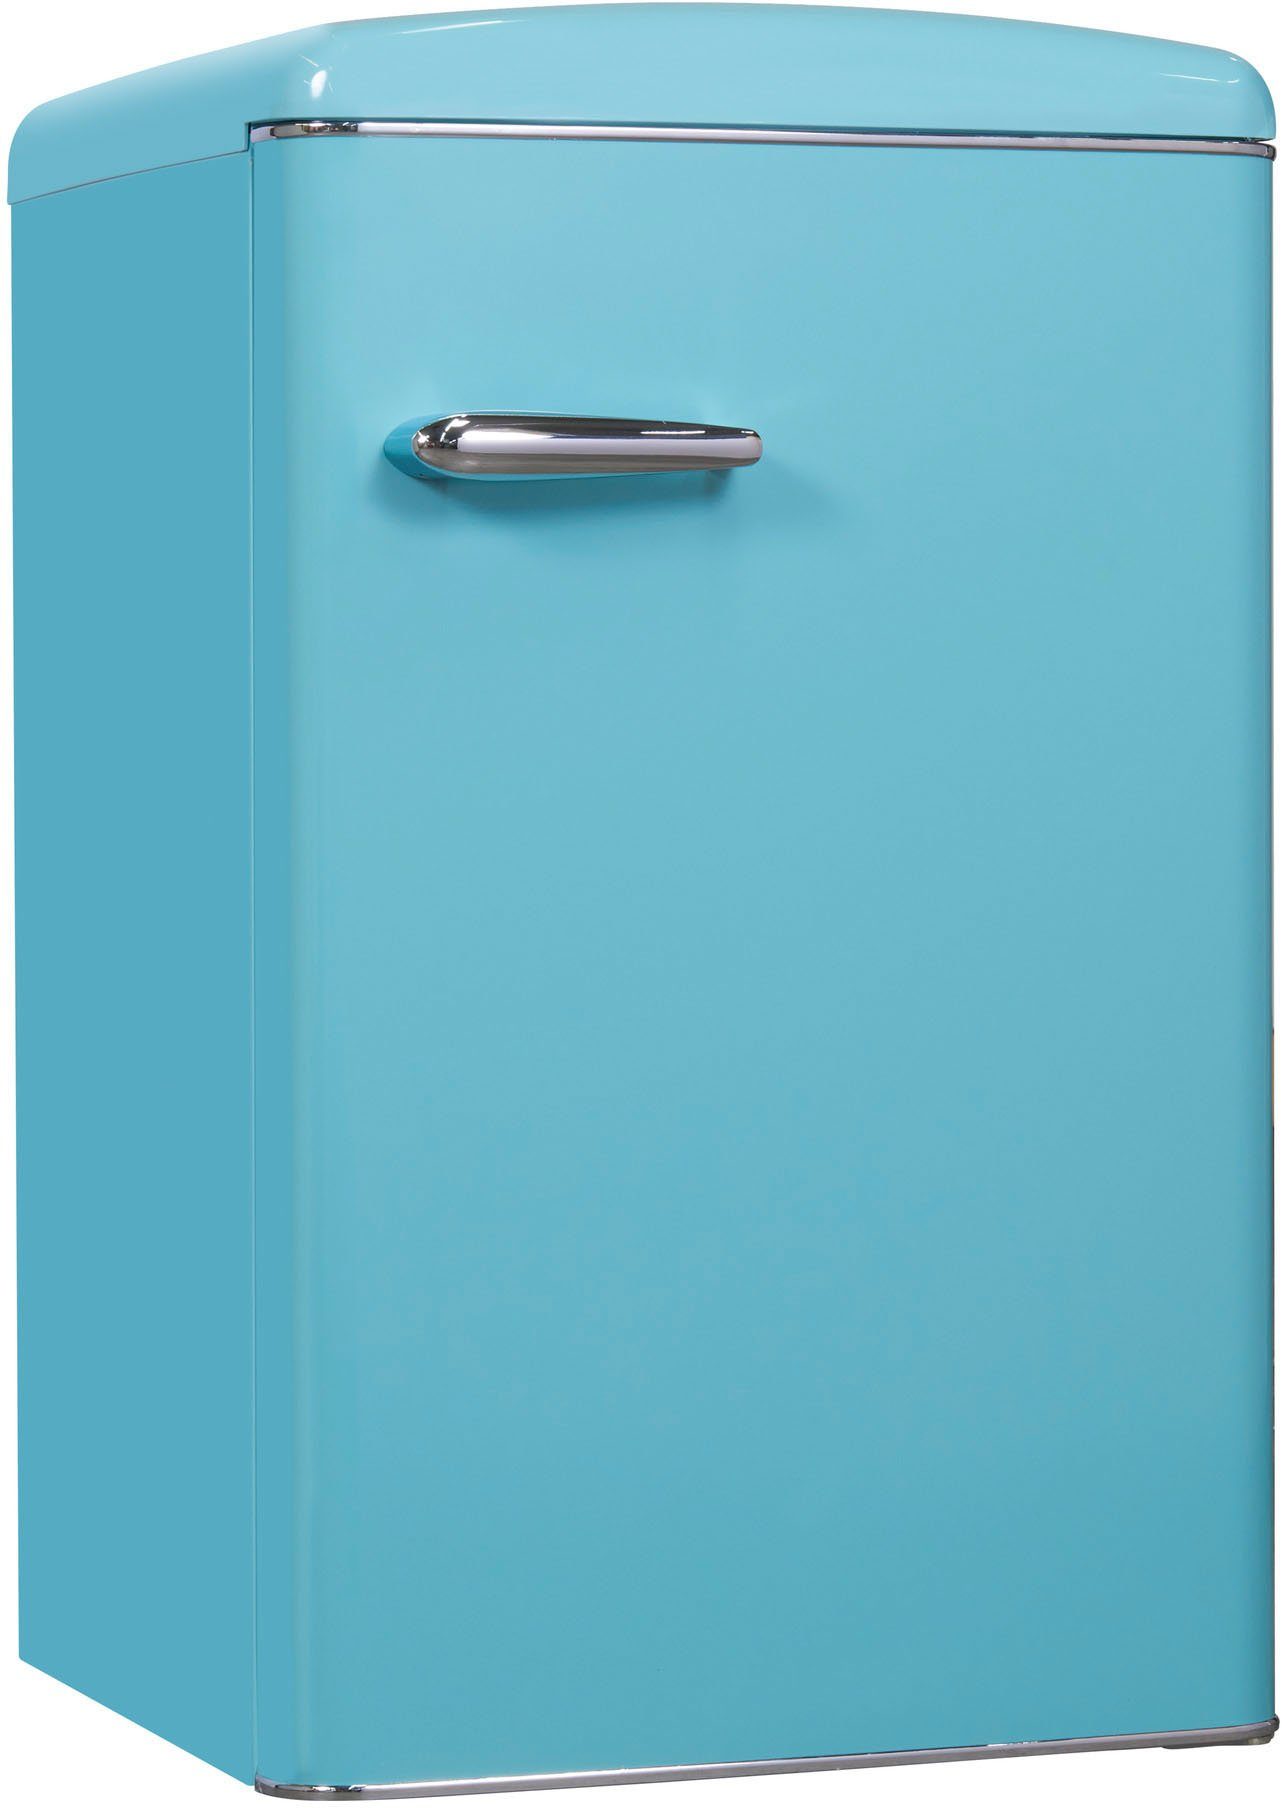 Kühlschrank exquisit 55 hoch, cm 89,5 breit taubenblau, cm RKS120-V-H-160F